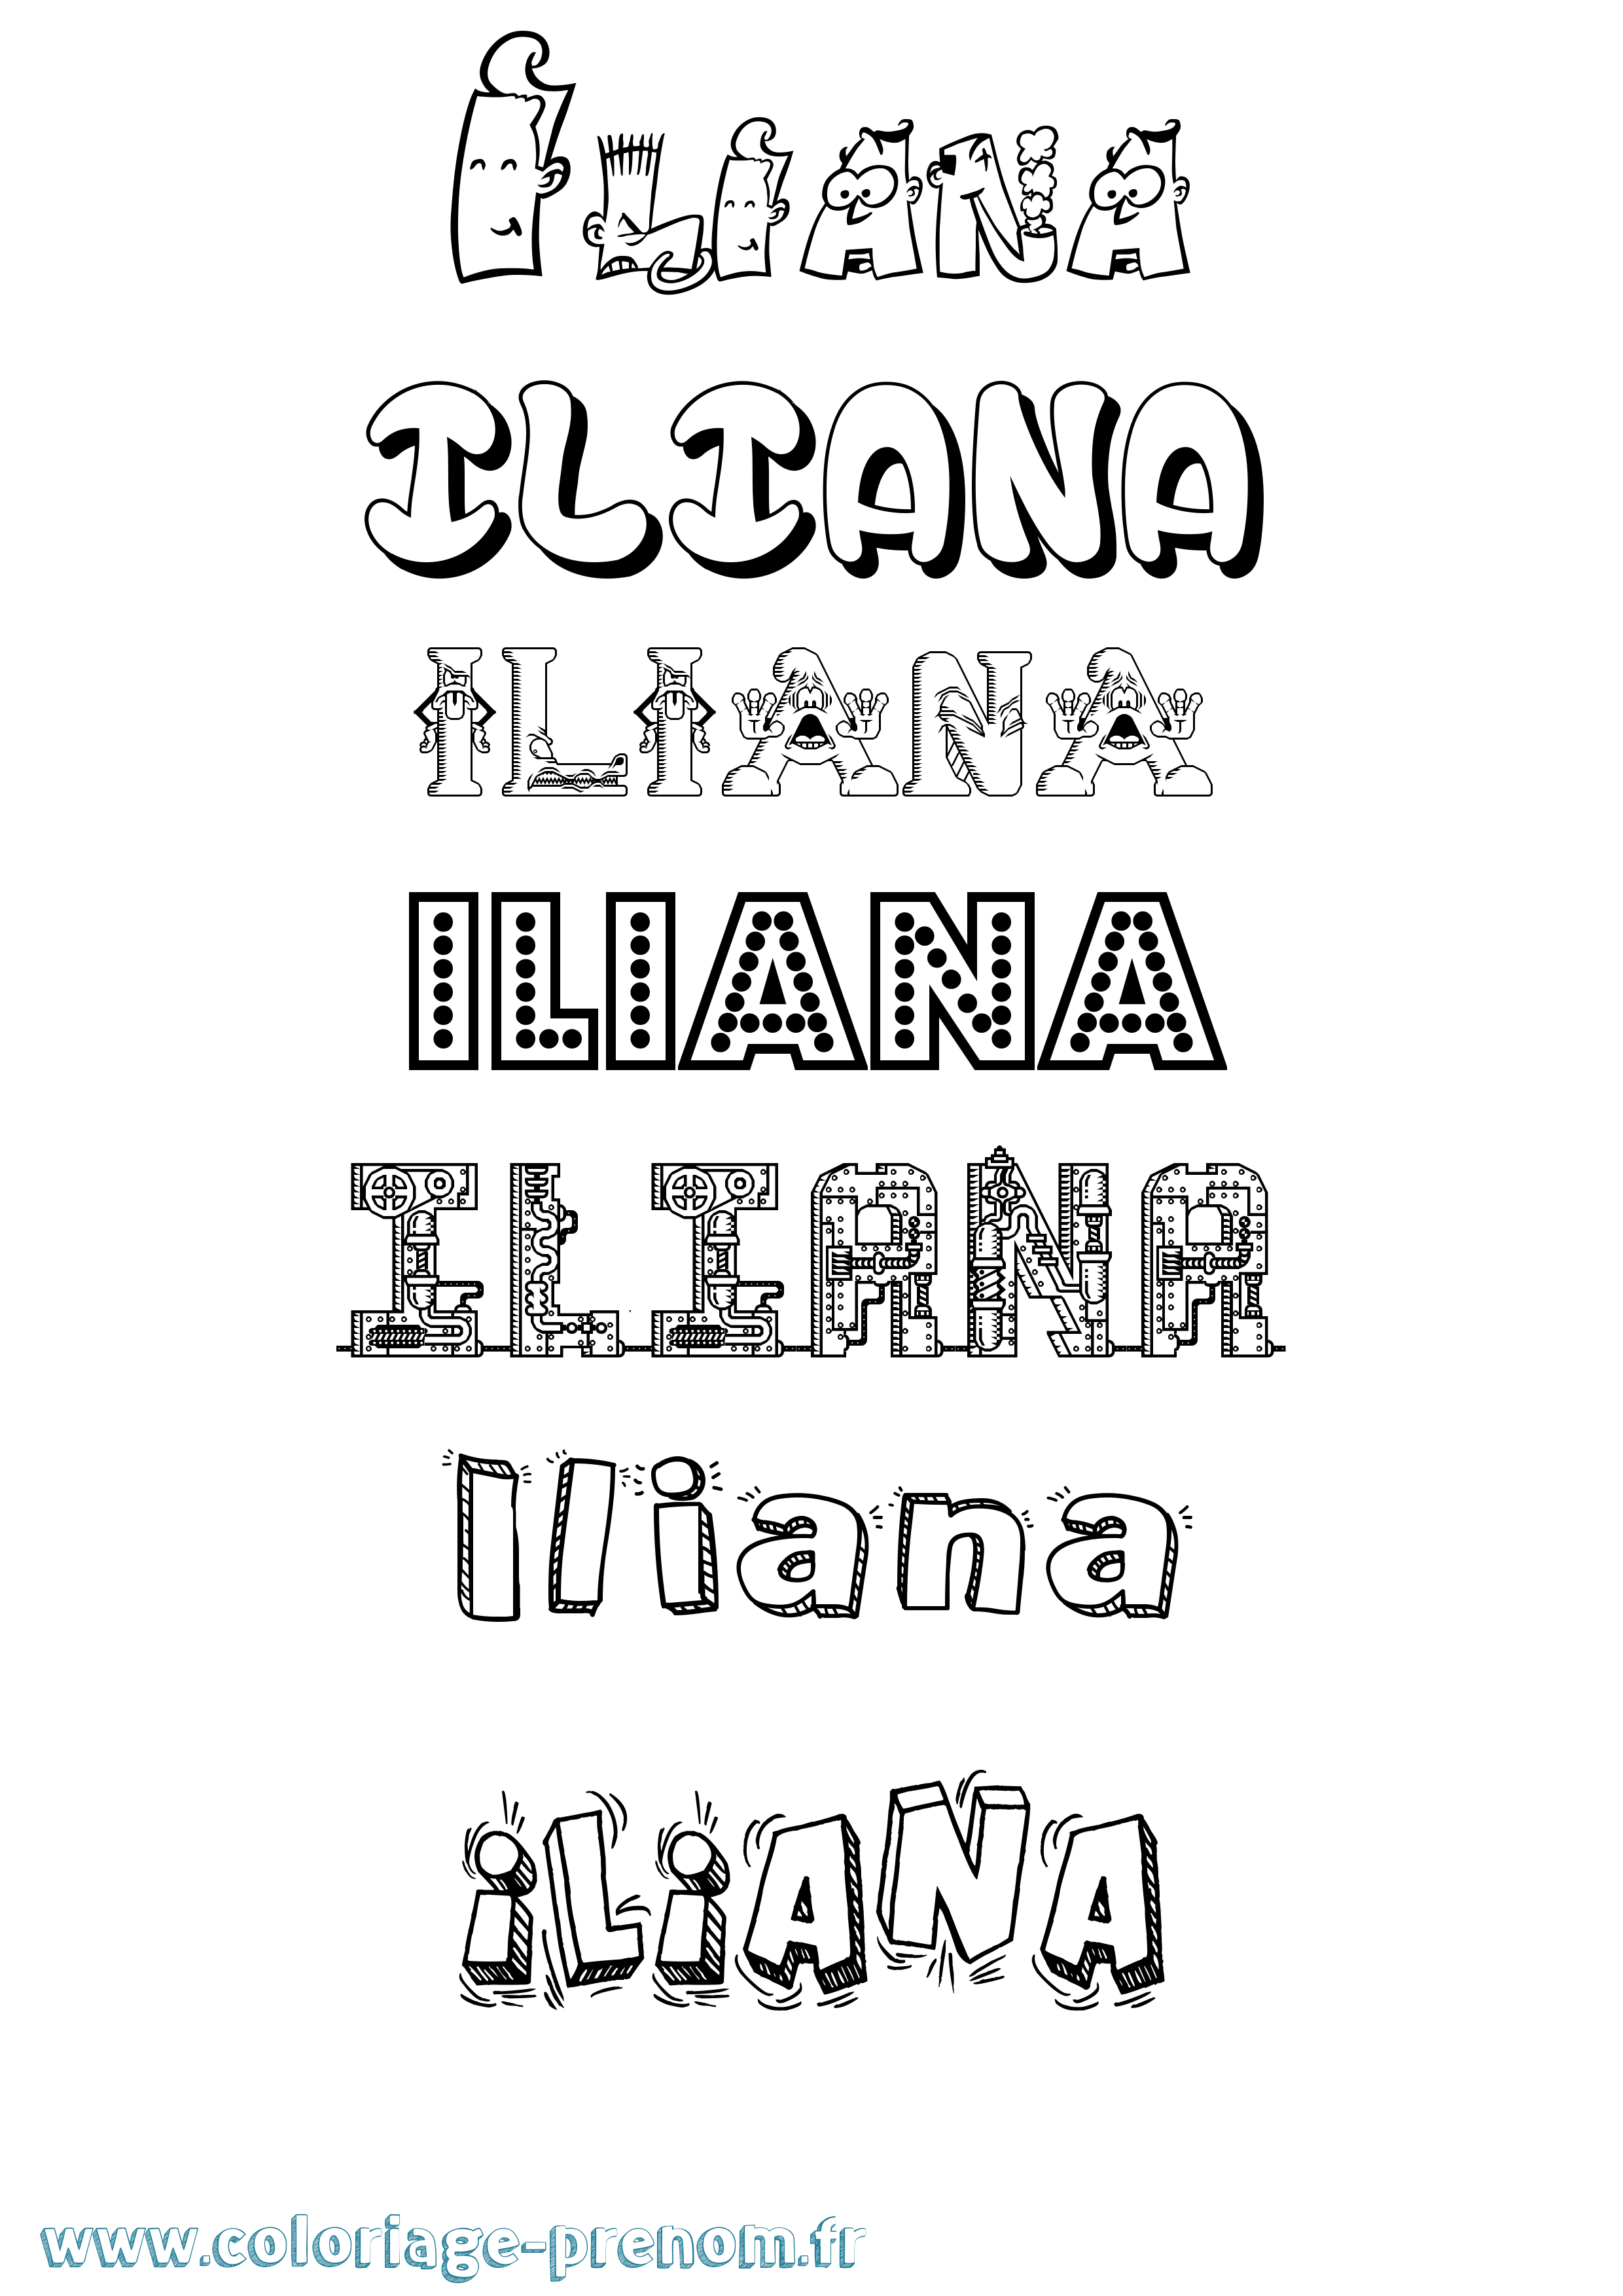 Coloriage prénom Iliana Fun